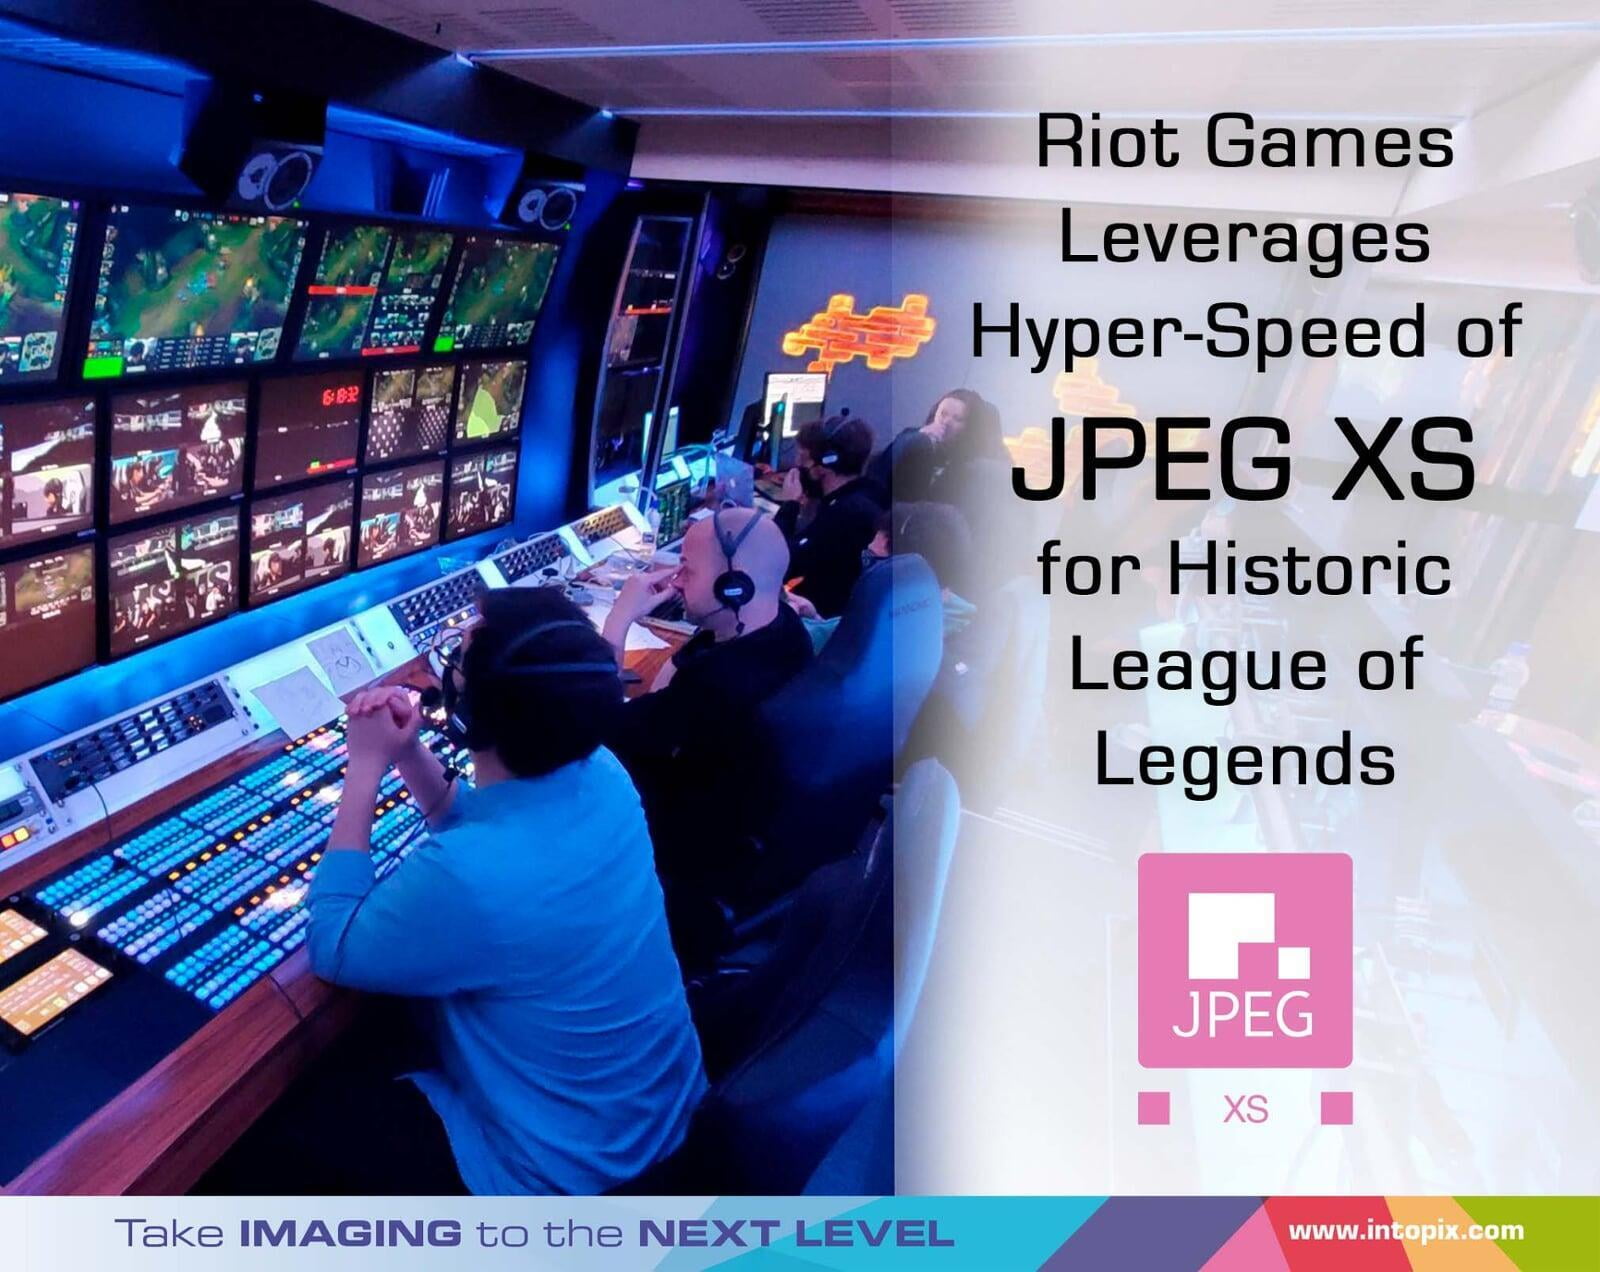 Riot Games exploite l'hyper vitesse de JPEG XS pour des événements historiques de League of Legends et Valorant en Islande.